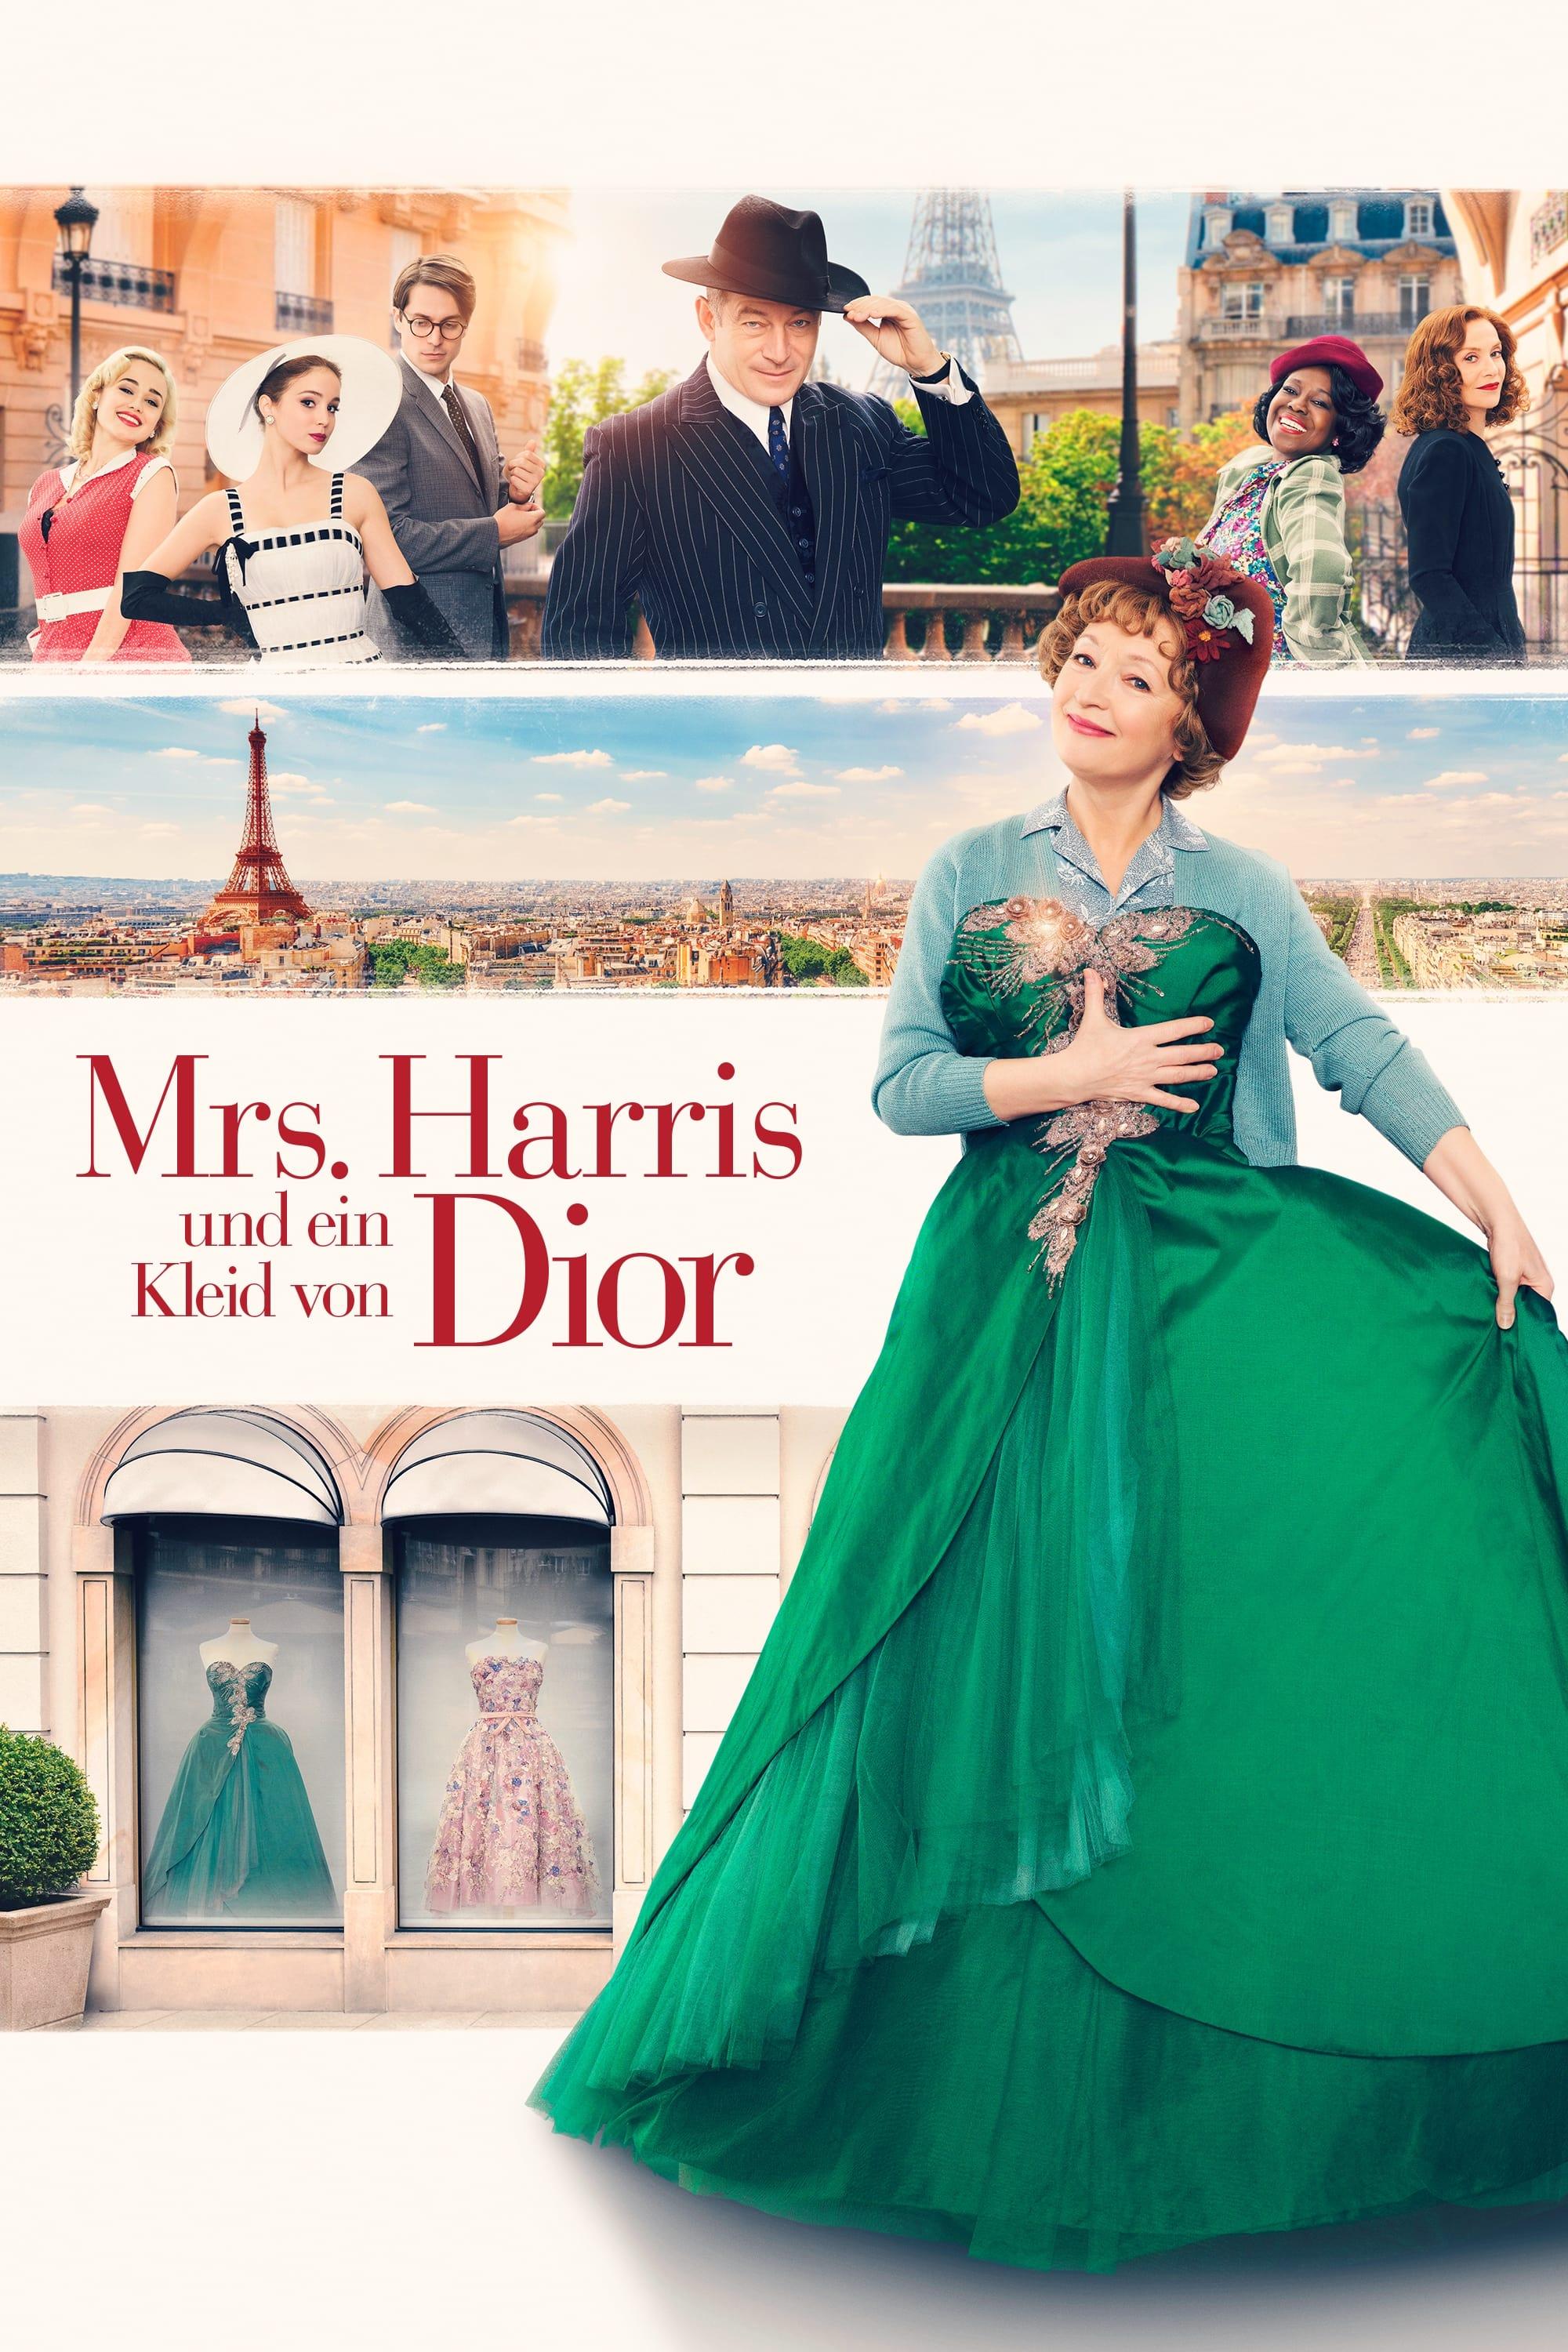 Mrs. Harris und ein Kleid von Dior poster